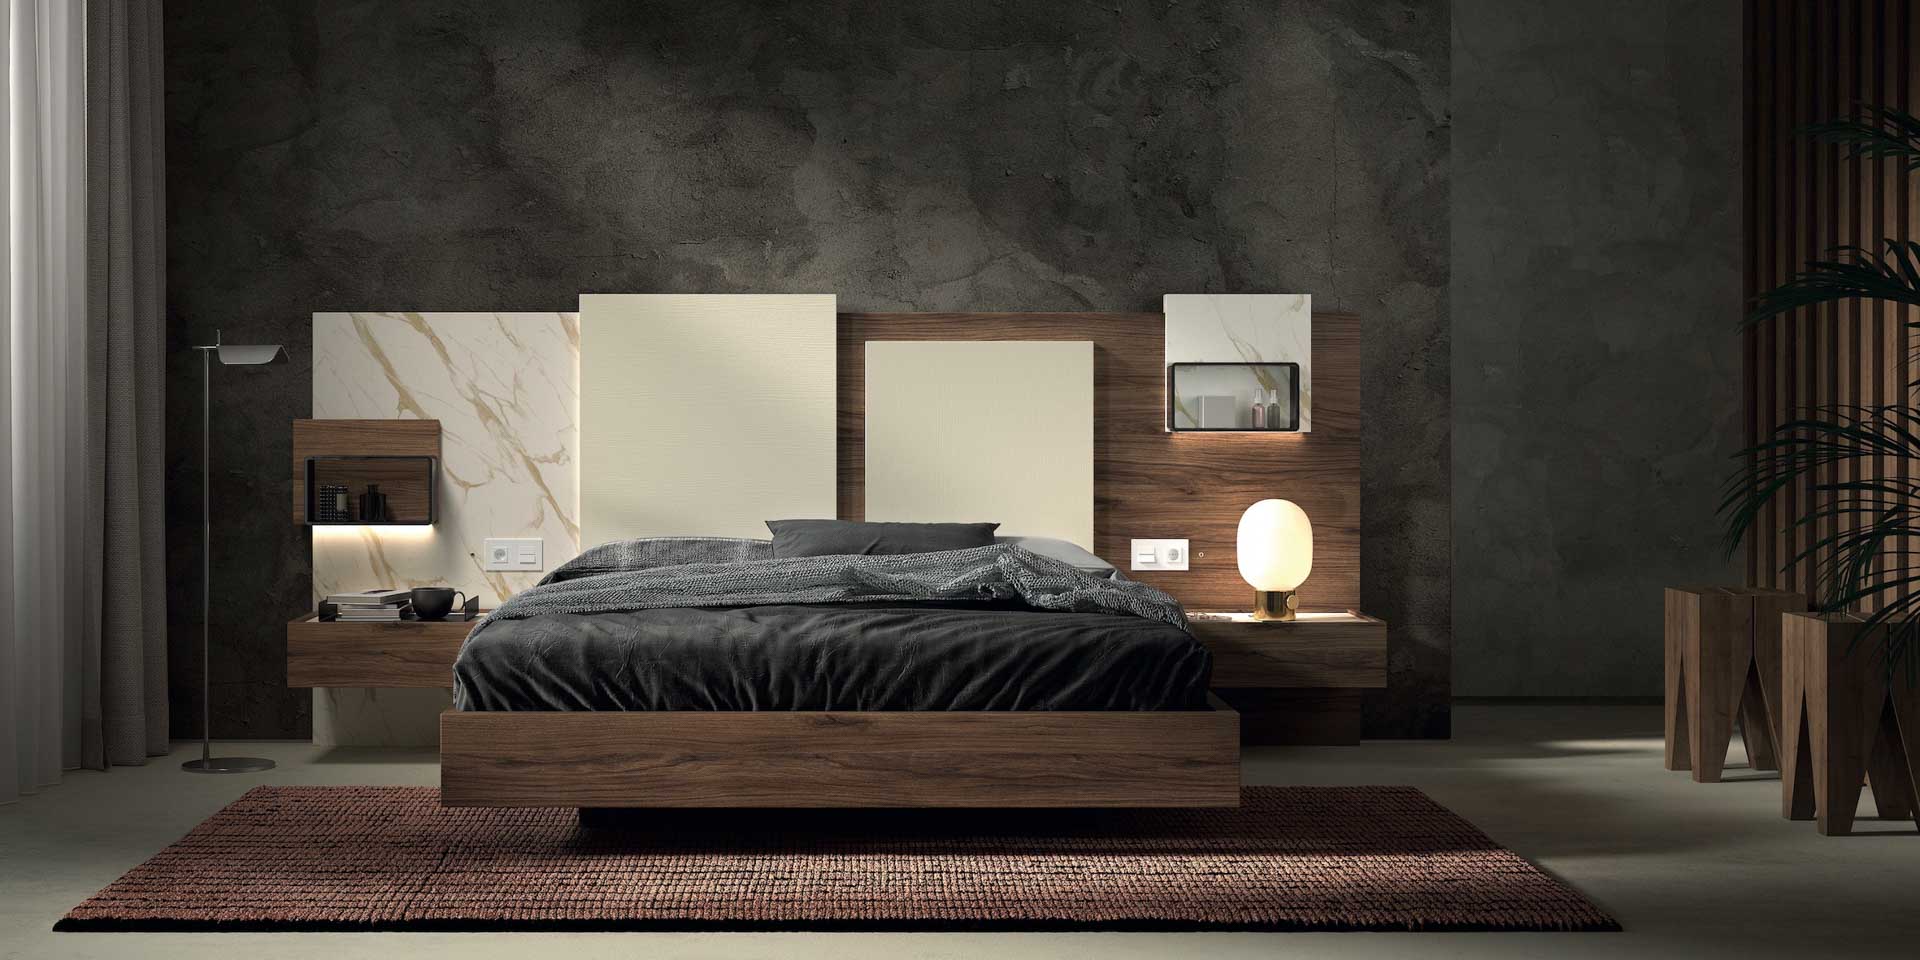 Diseño de mobiliario de dormitorio 54